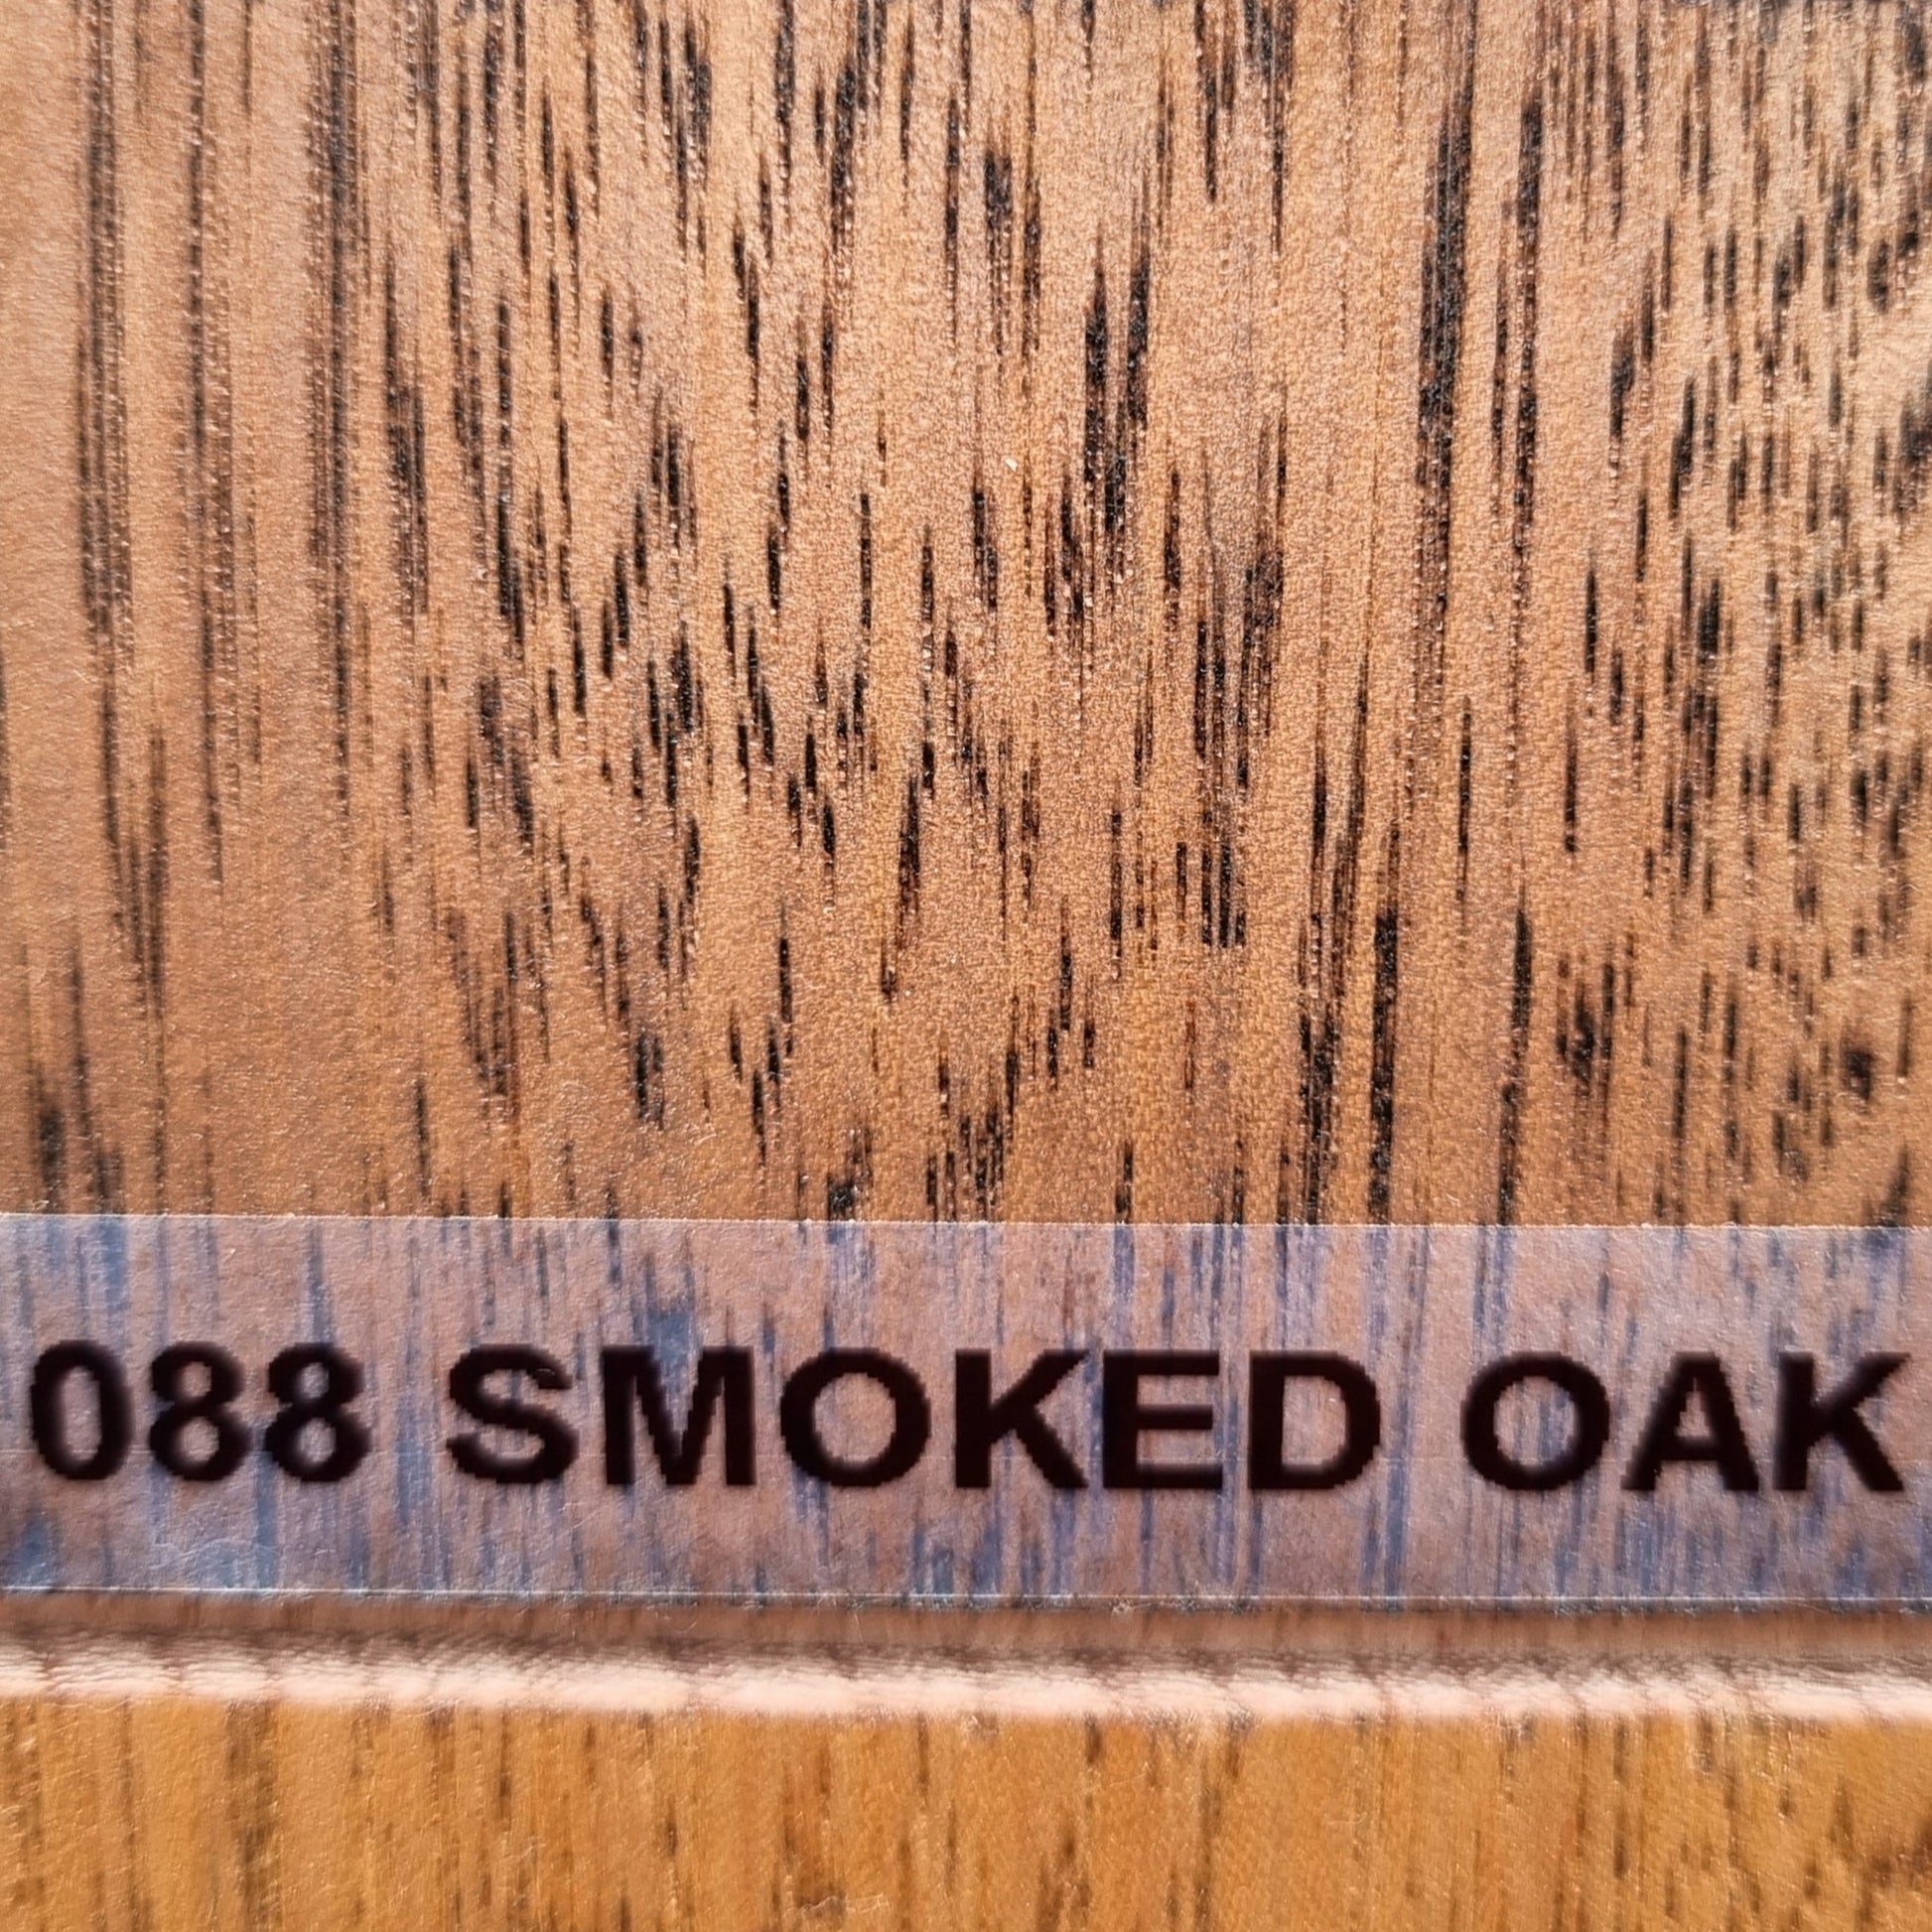 088 - Smoked Oak